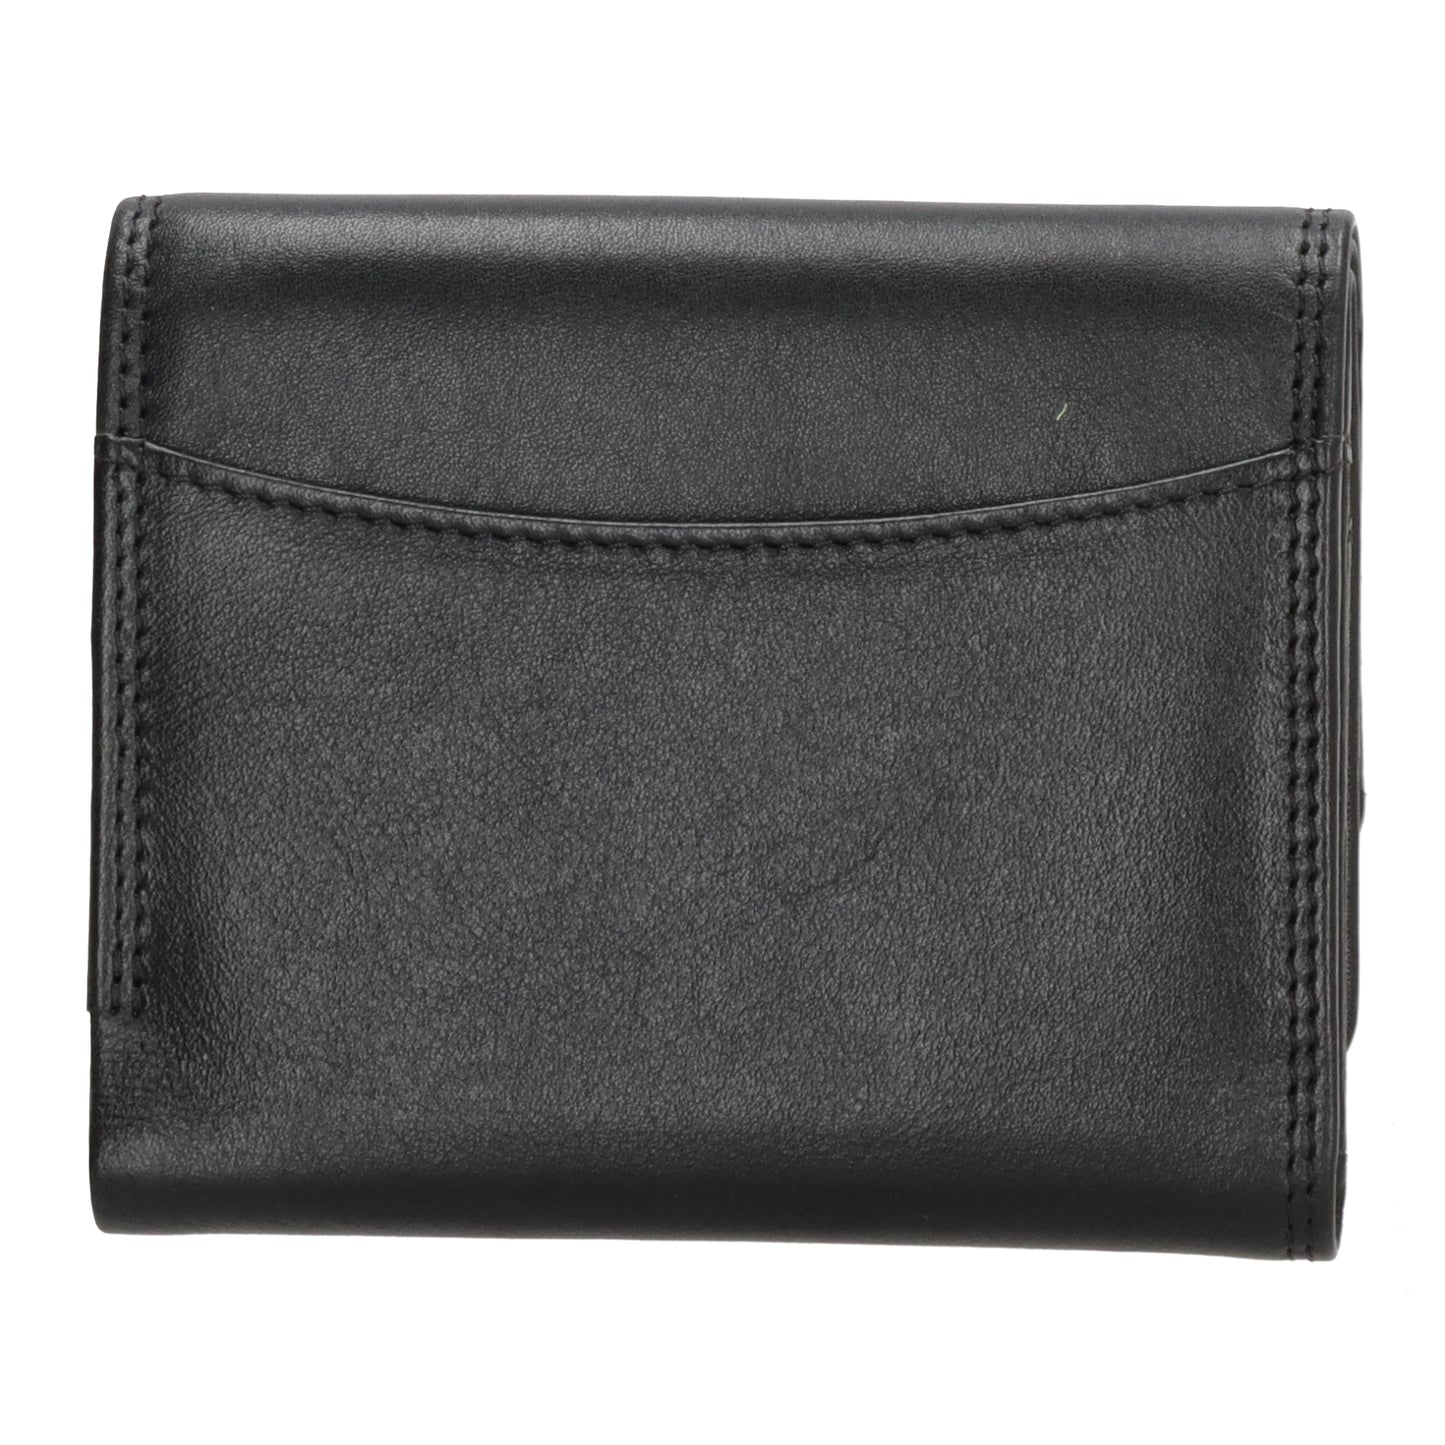 Lederbörse 10,5x8,5cm in Schwarz mit Überschlag und RFID-Schutz